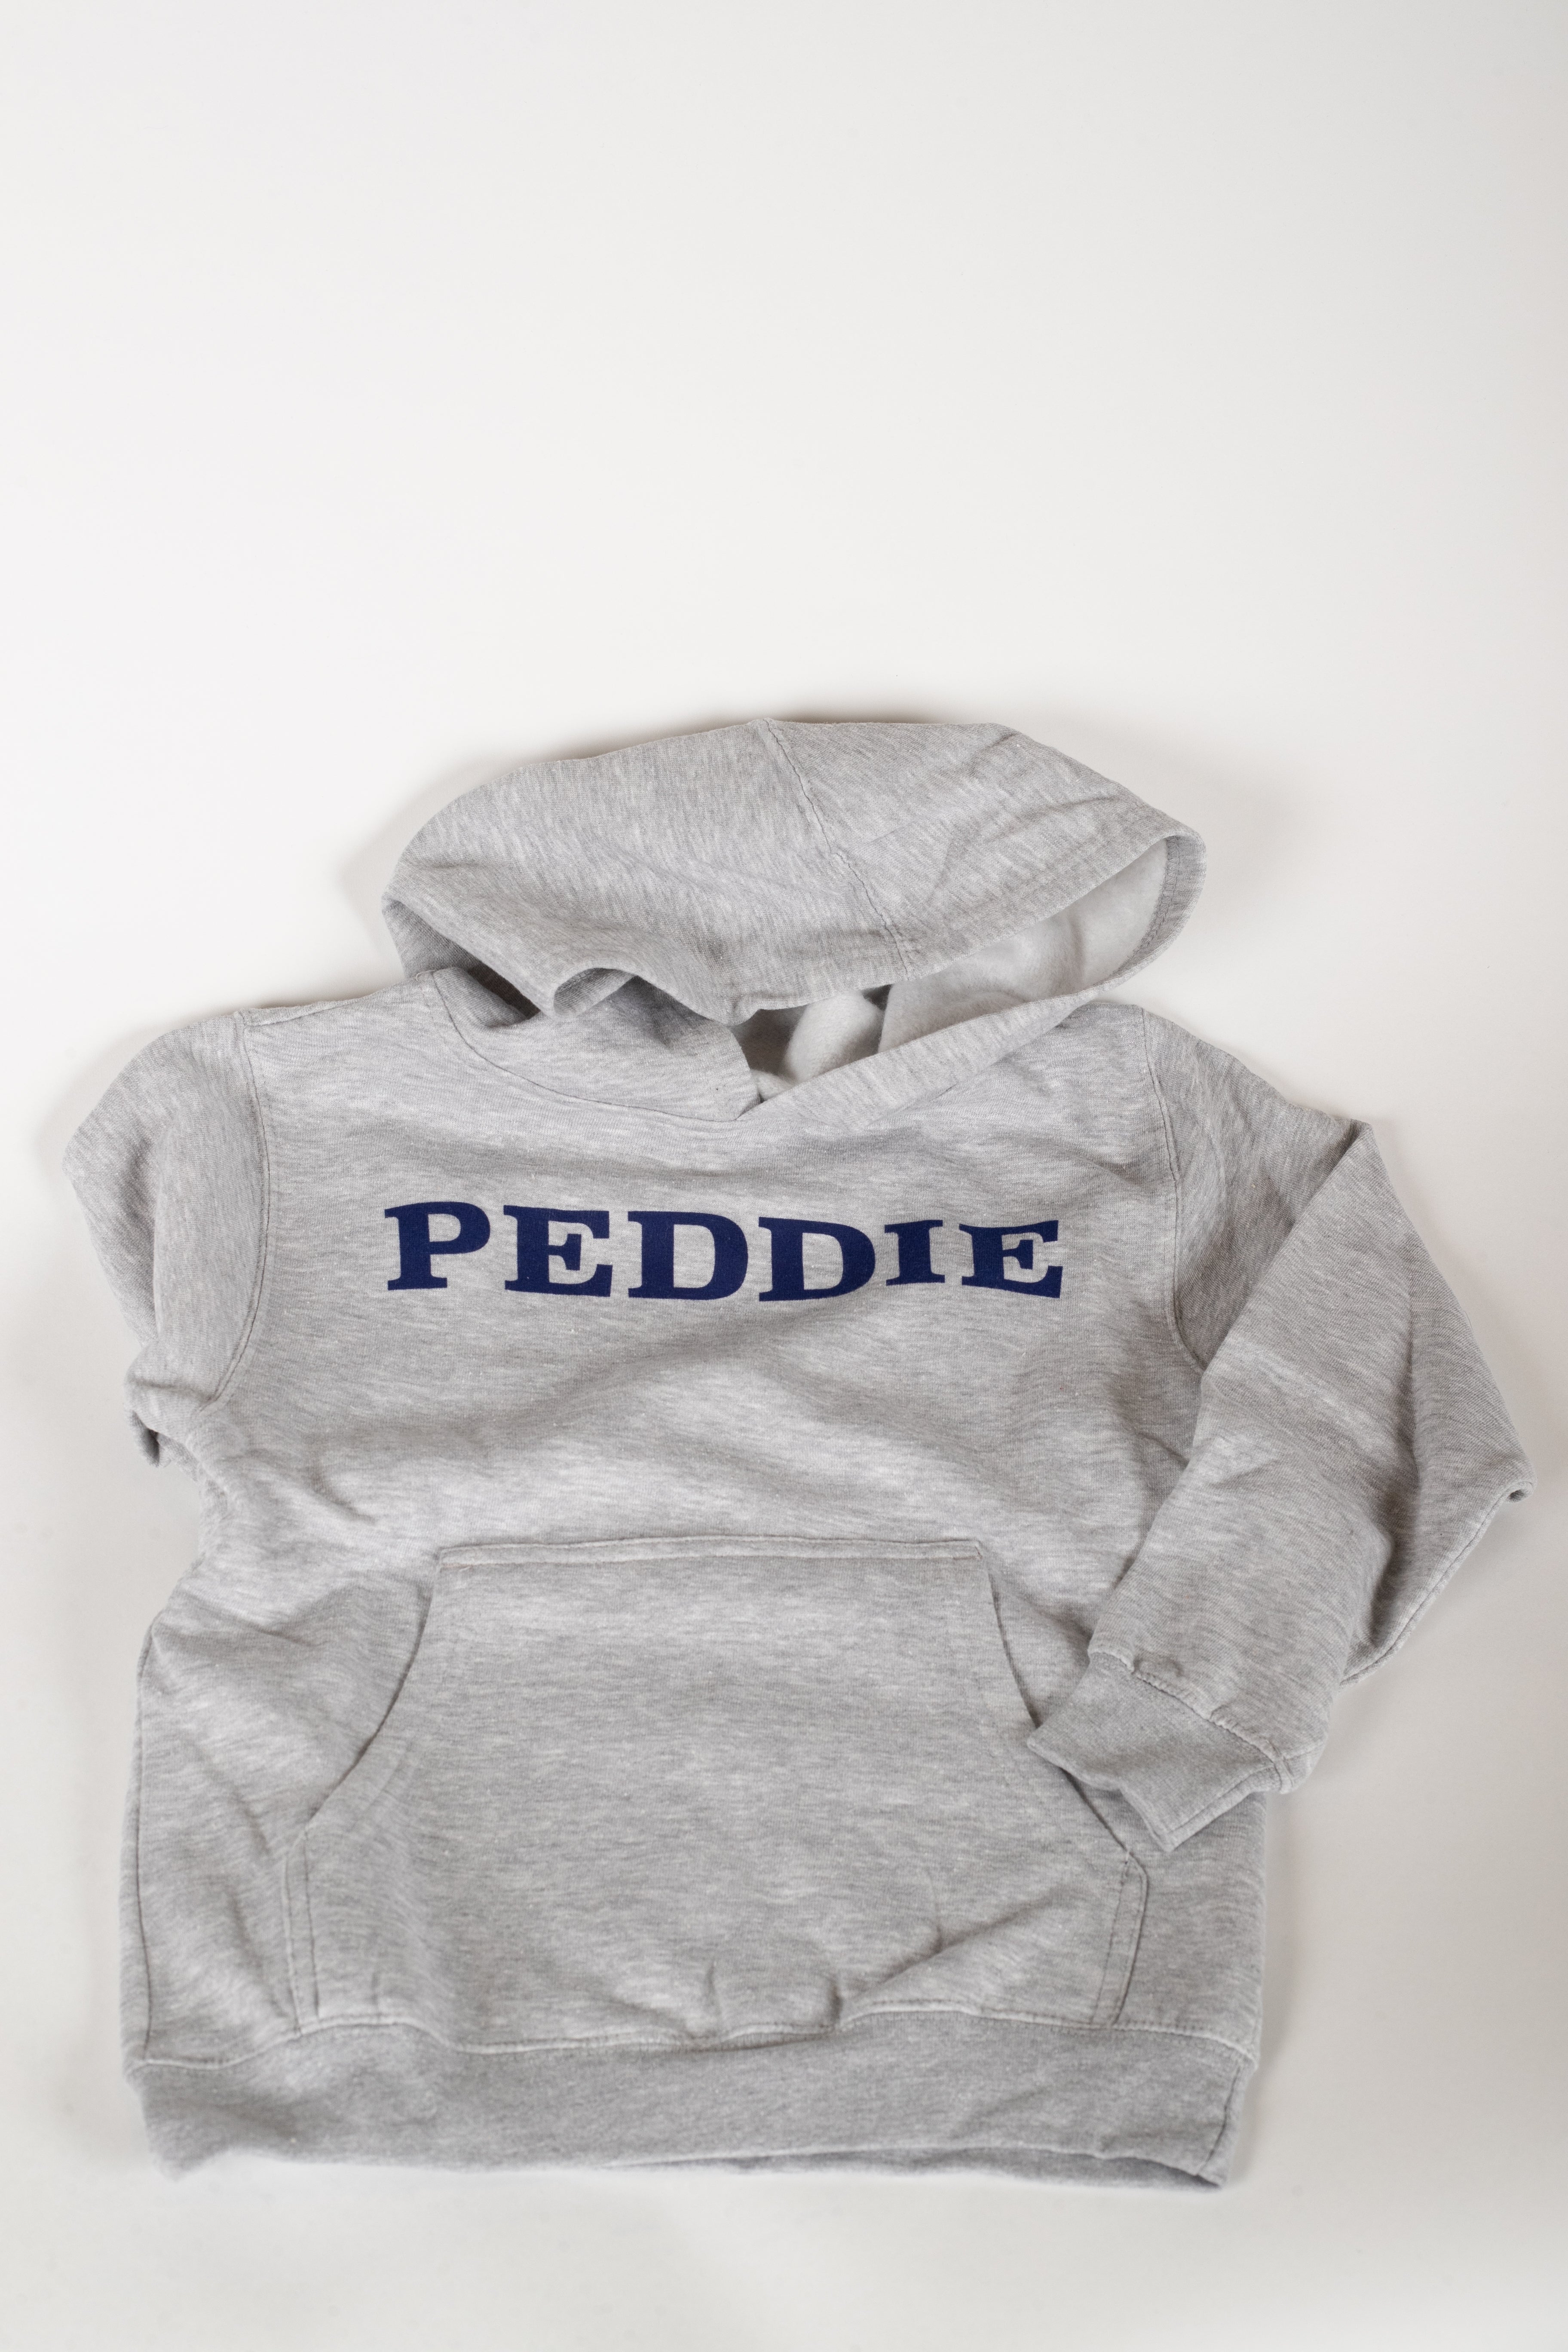 Peddie Hoodie